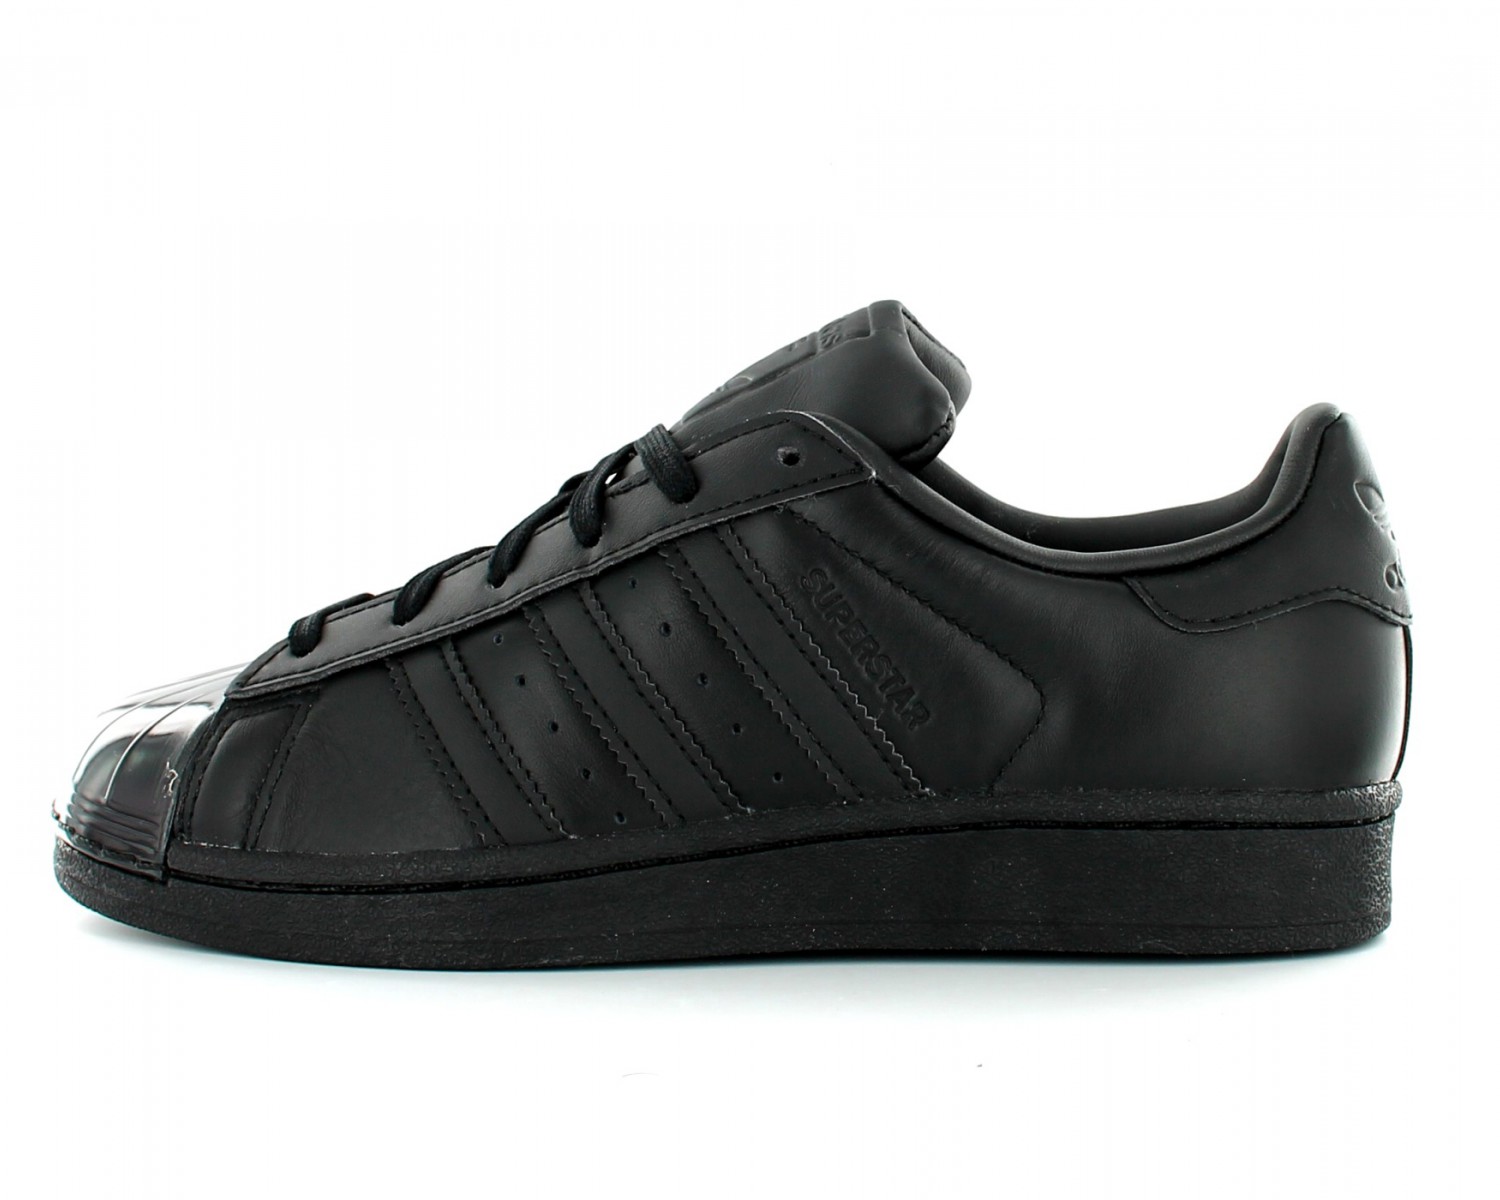 Adidas Superstar toute noir NOIR/NOIR